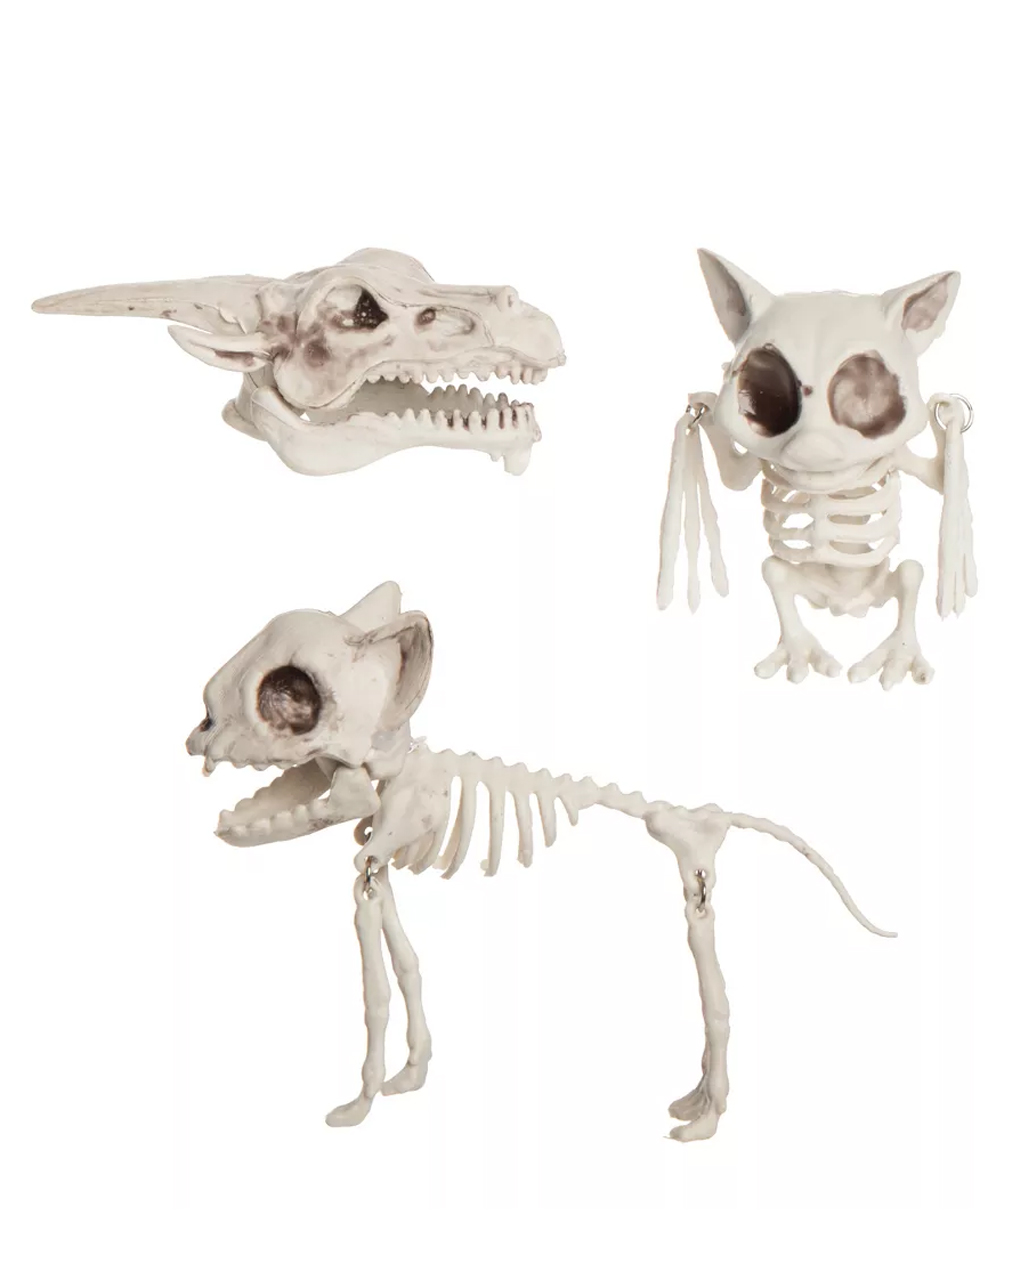 https://inst-1.cdn.shockers.de/hs_cdn/out/pictures/master/product/1/tierskelette-im-netz-3-stueck-tierskelette-als-halloween-dekoration-skelett-deko-grusel-deko-eulen-skelett-katzen-skelett-drachenschaedel-55385.jpg